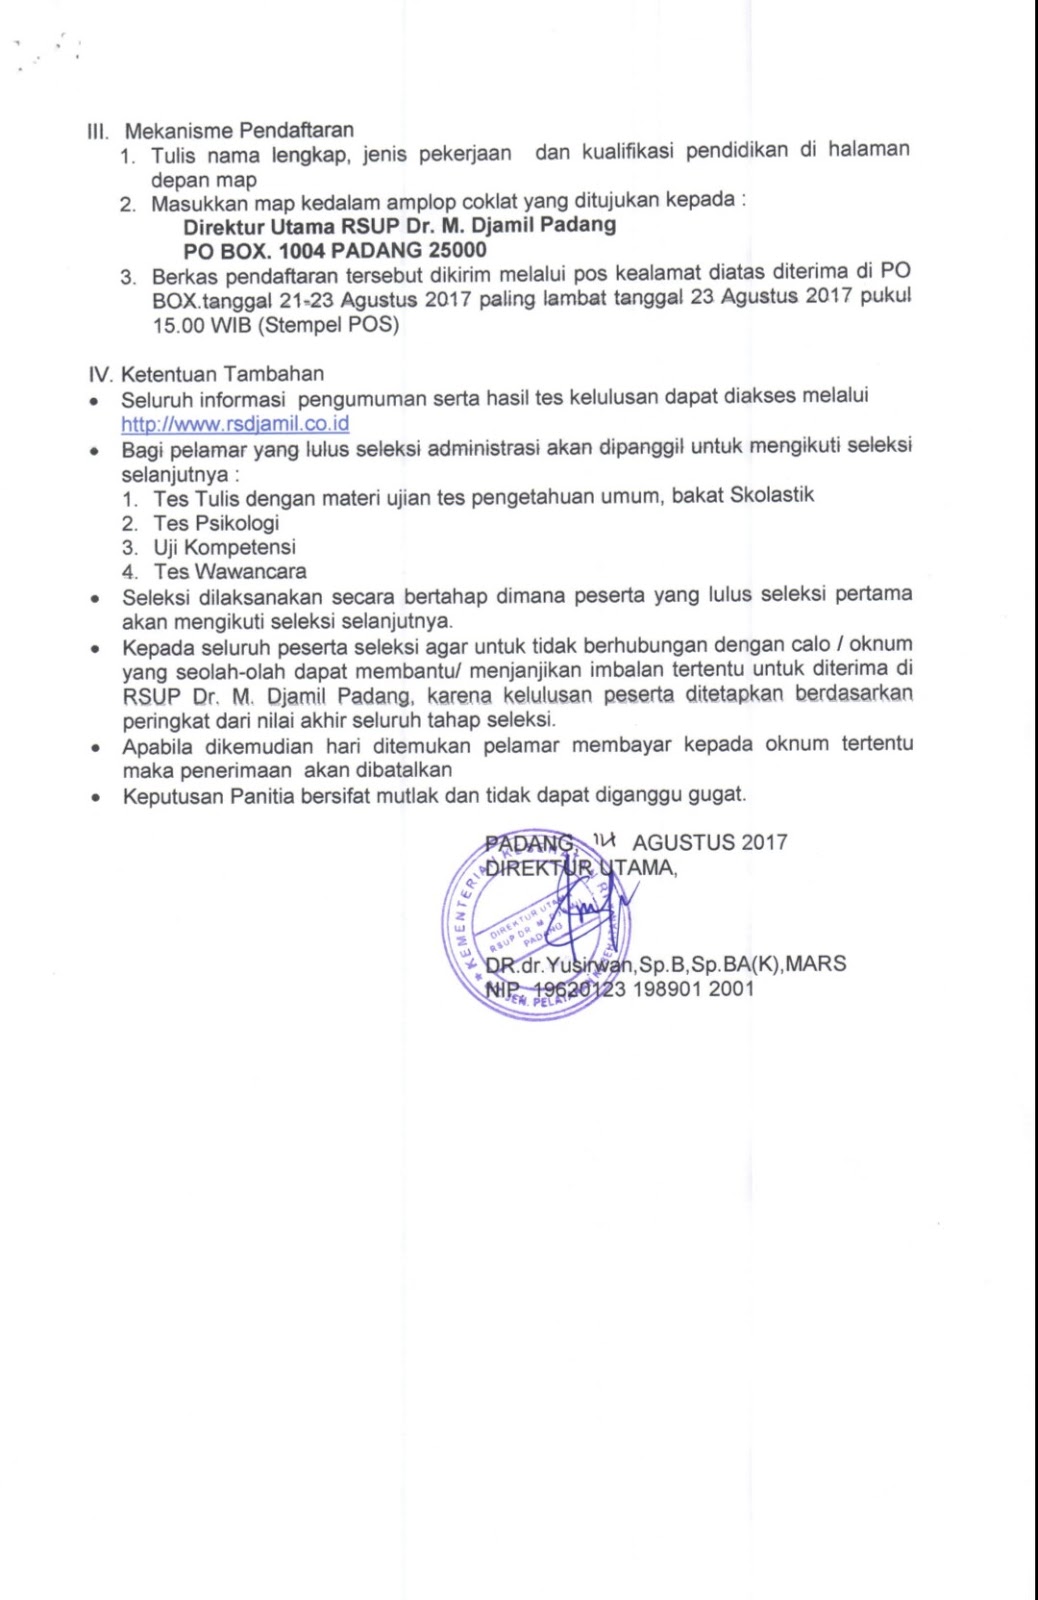 Lowongan Kerja Non PNS di RSUP dr. M. Djamil Padang Terbaru